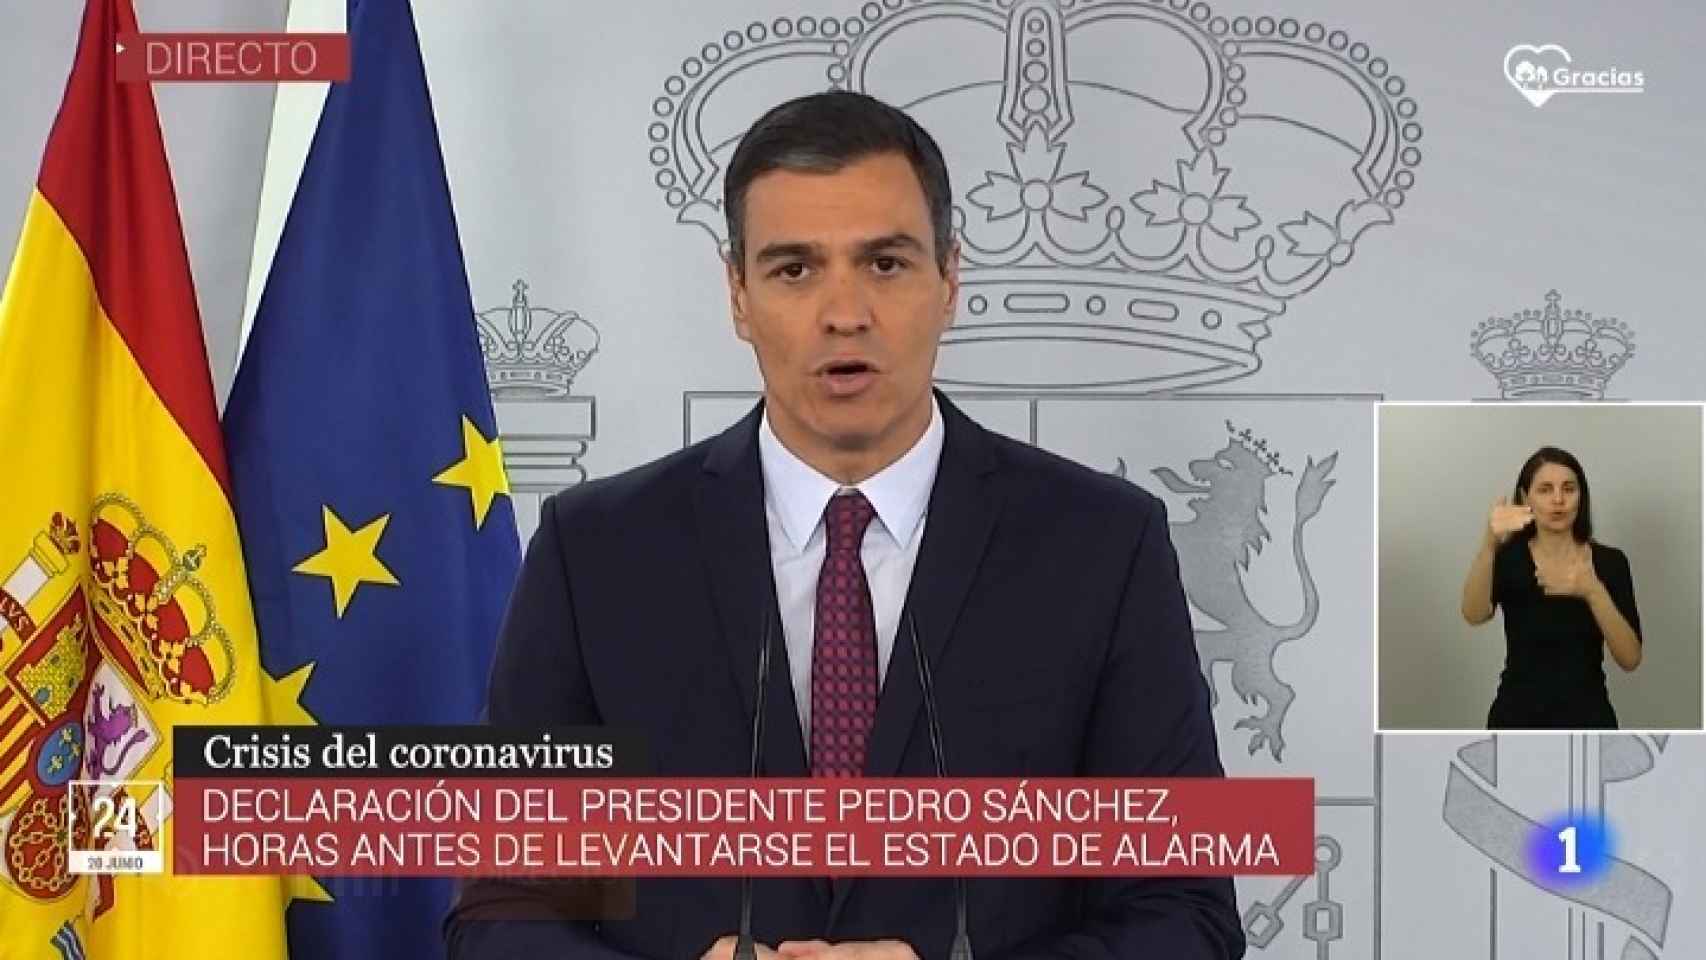 La transmisión de TVE de la comparecencia de Pedro Sánchez con el logro con la palabra gracias.